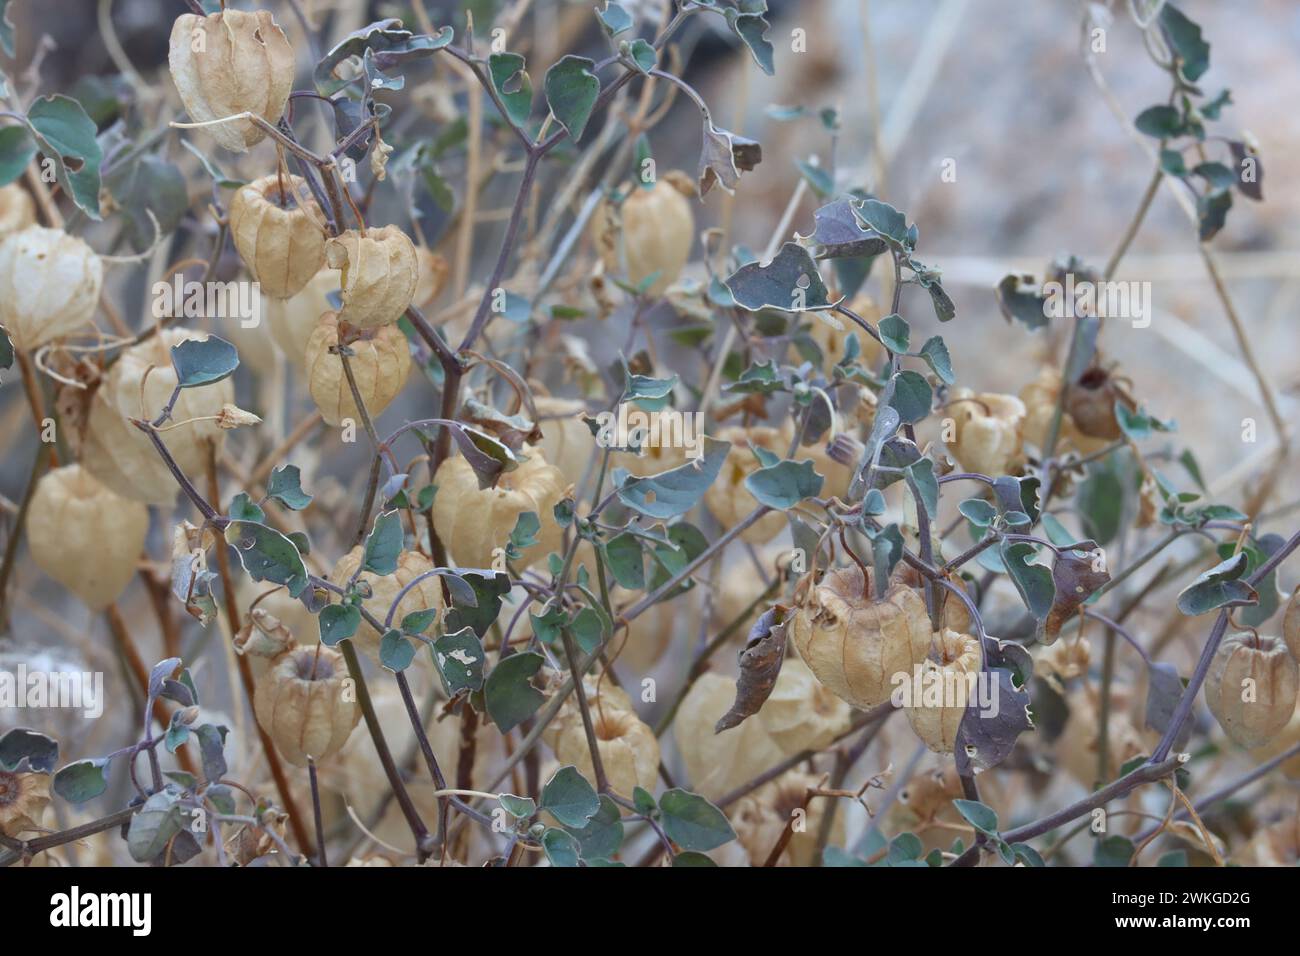 Yellow Nightshade Groundcherry, Physalis Crassifolia, une herbe indigène présentant des enveloppes bronzées enfermant des fruits à baies, hiver dans le désert de la vallée de Borrego. Banque D'Images